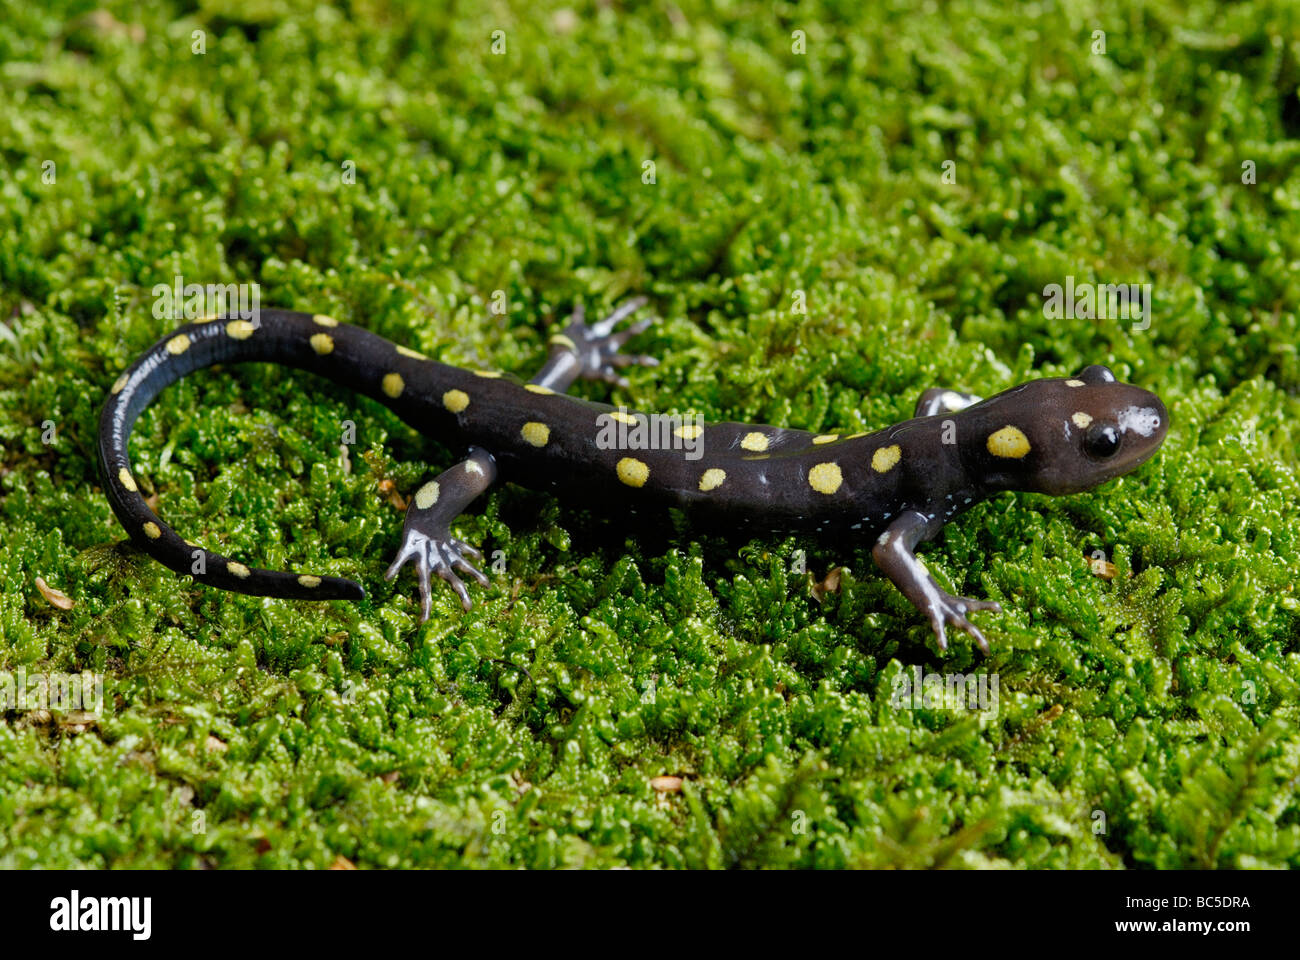 Spotted salamander, Ambystoma maculatum, on moss. Stock Photo